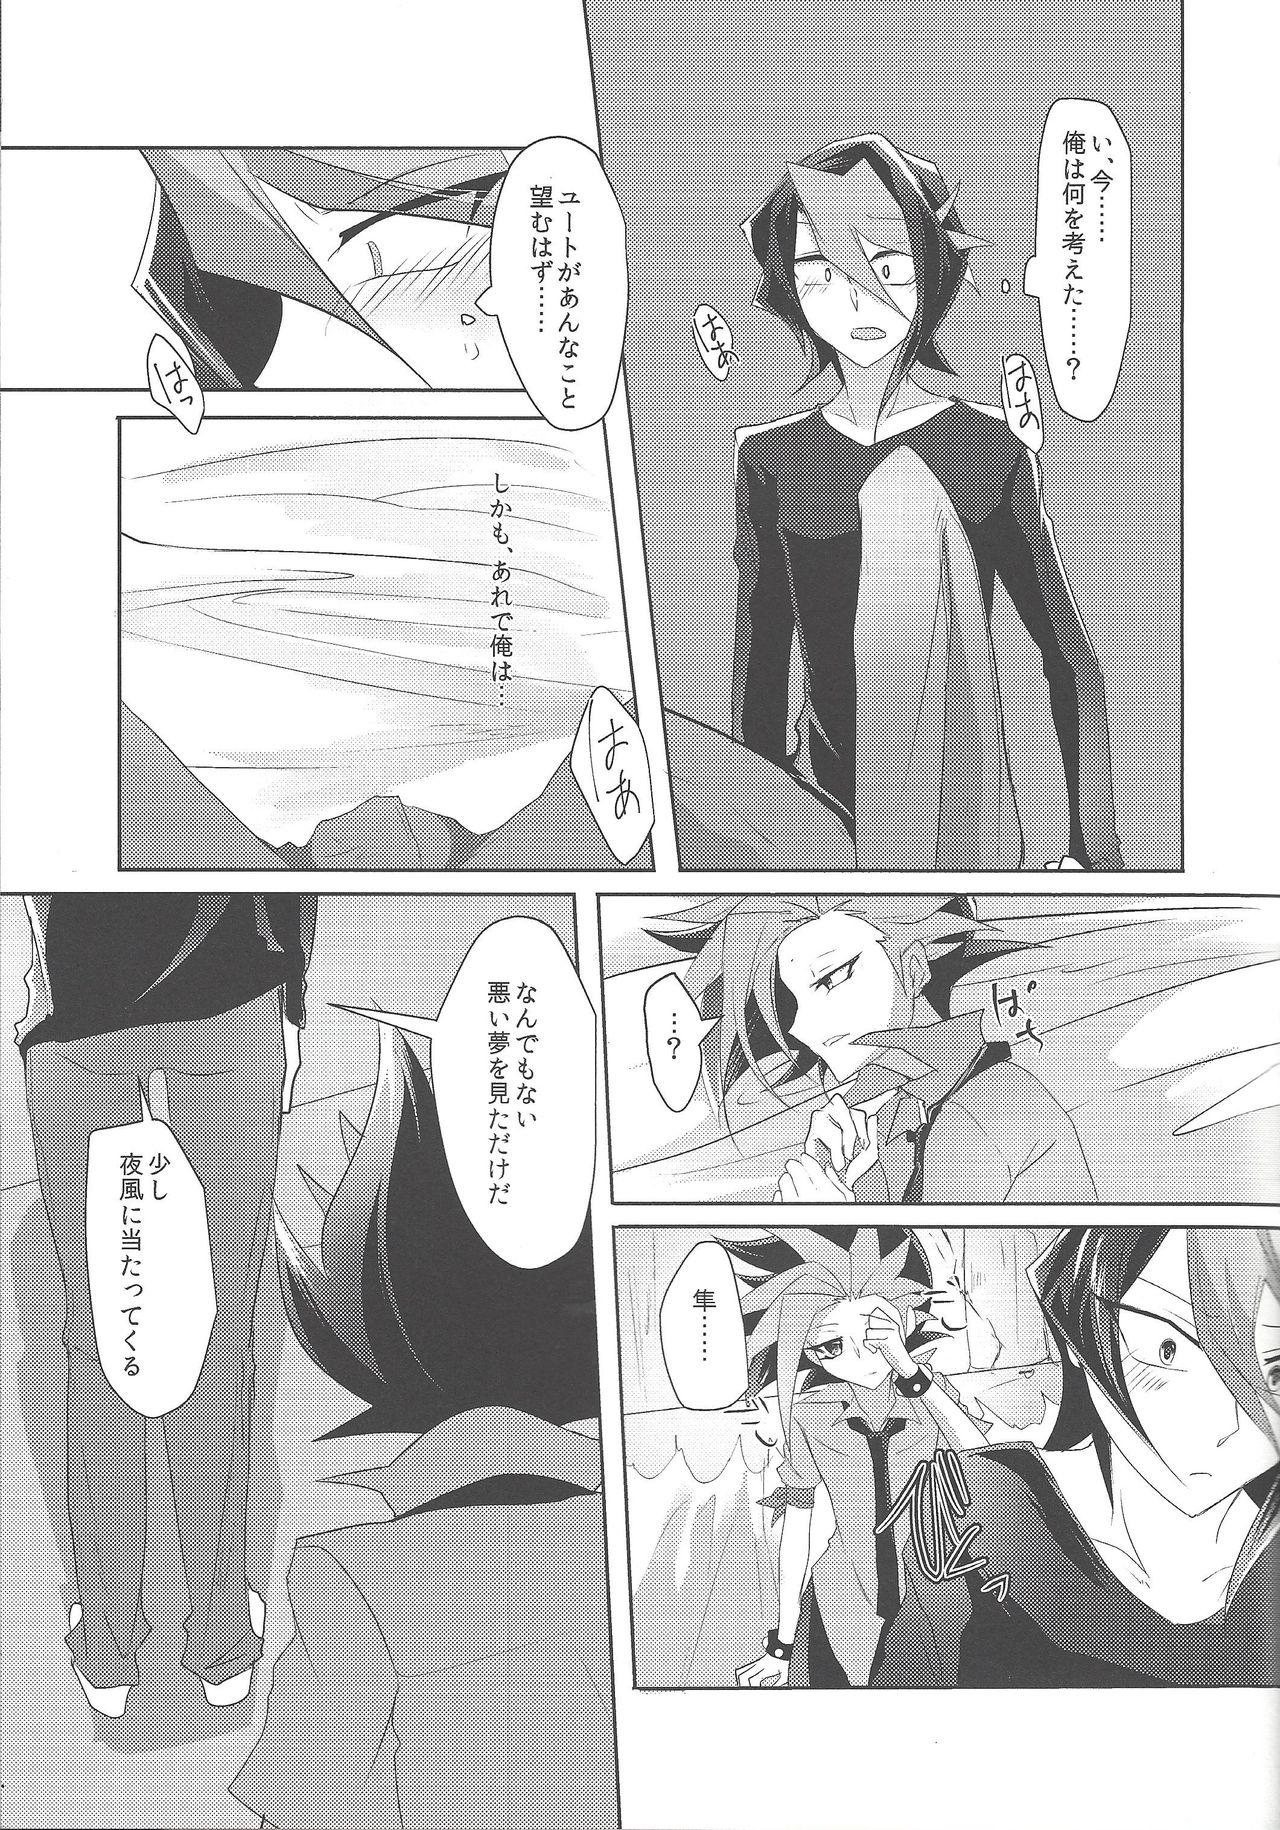 Boobs Kimi to kokoro no risōkyō - Yu gi oh arc v Pija - Page 10